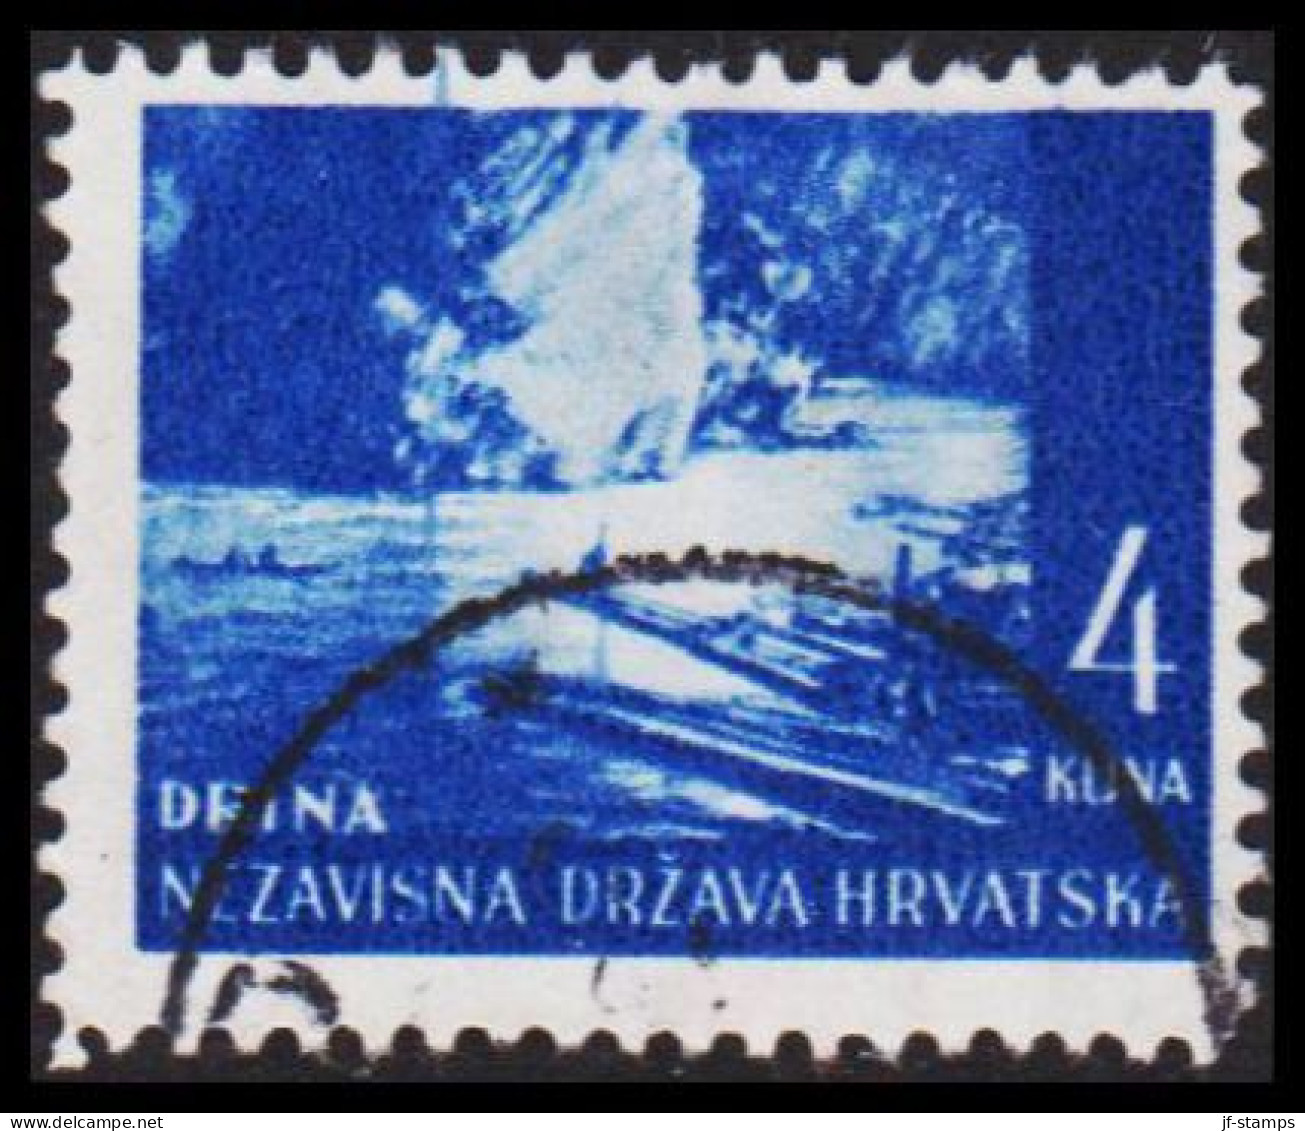 1941-1942. HRVATSKA Landscapes 4 KUNA.  (Michel 54) - JF546048 - Croatia